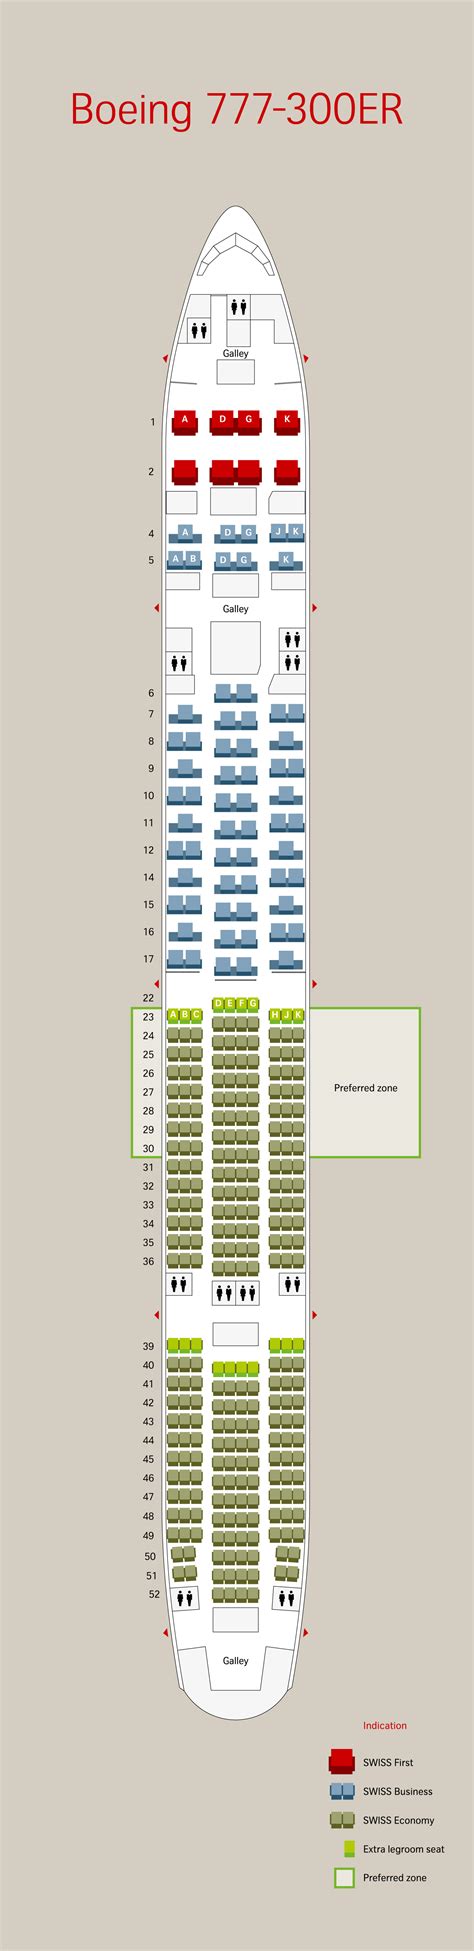 Boeing B777 300er Seat Map